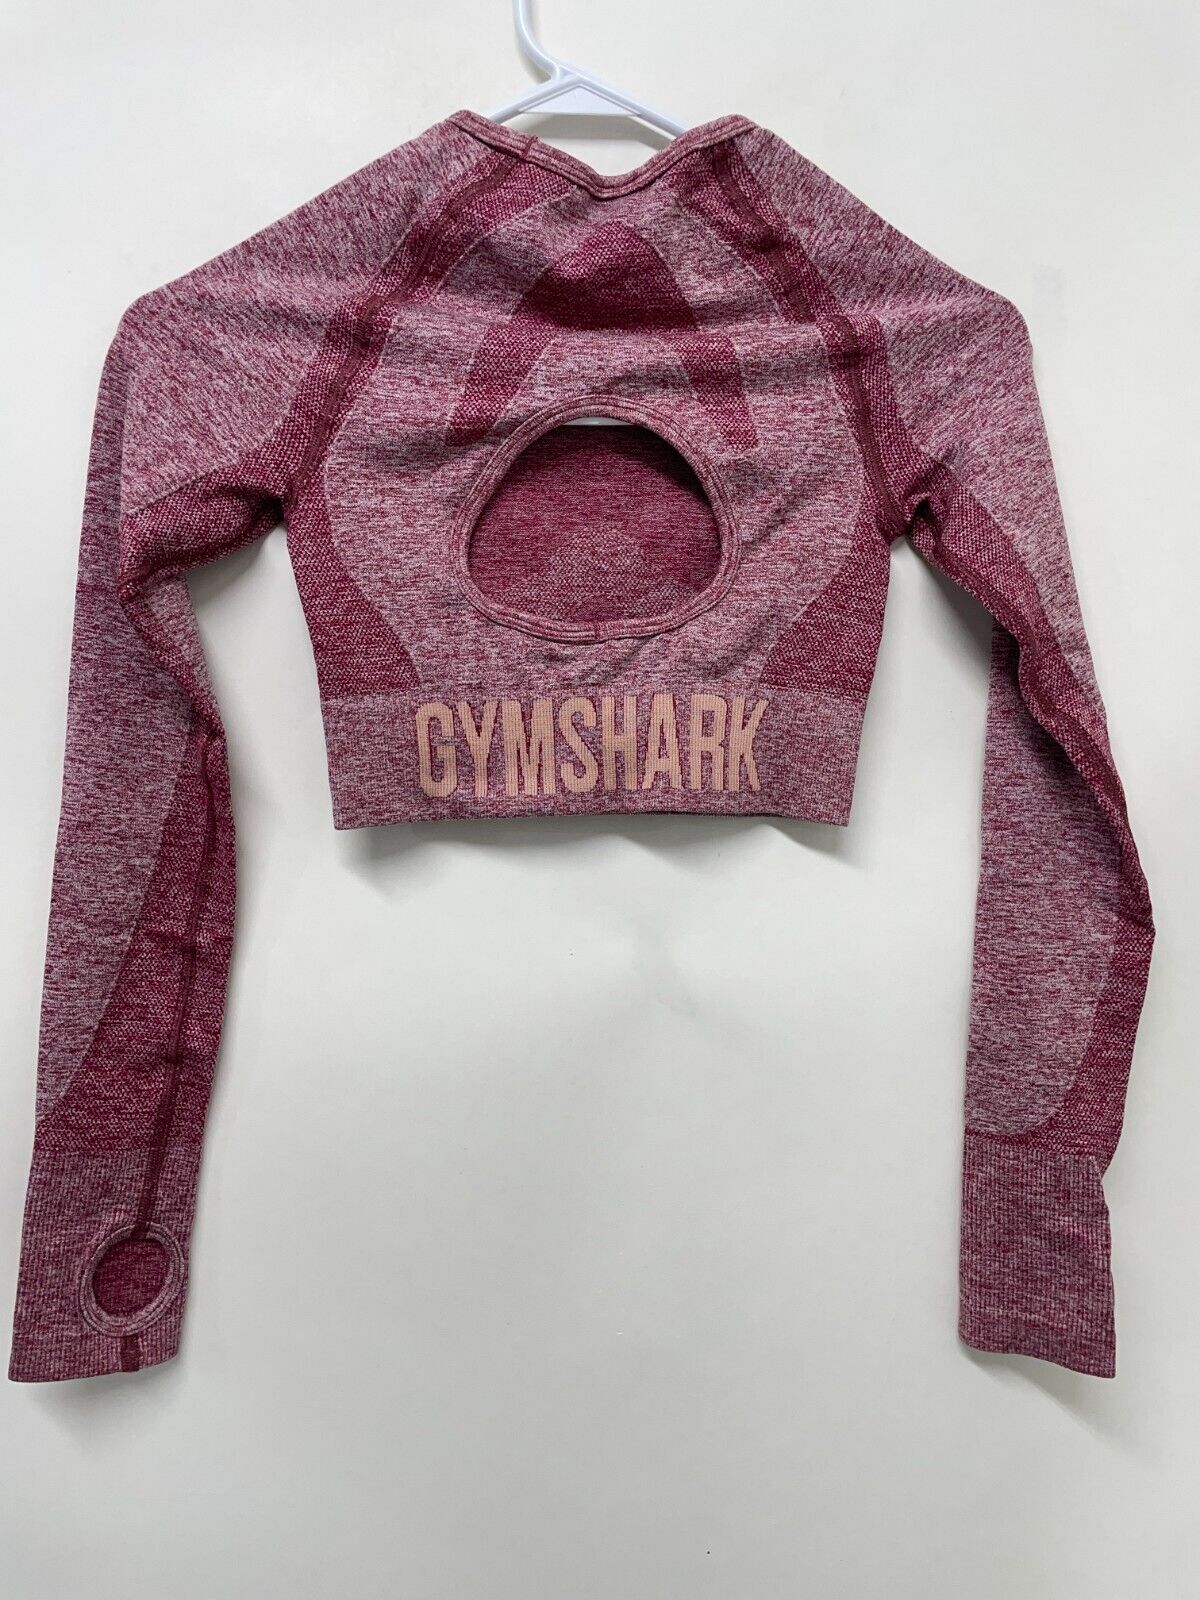 Gymshark Vital Seamless Long Sleeve Crop Top XS Purple Pink Marl